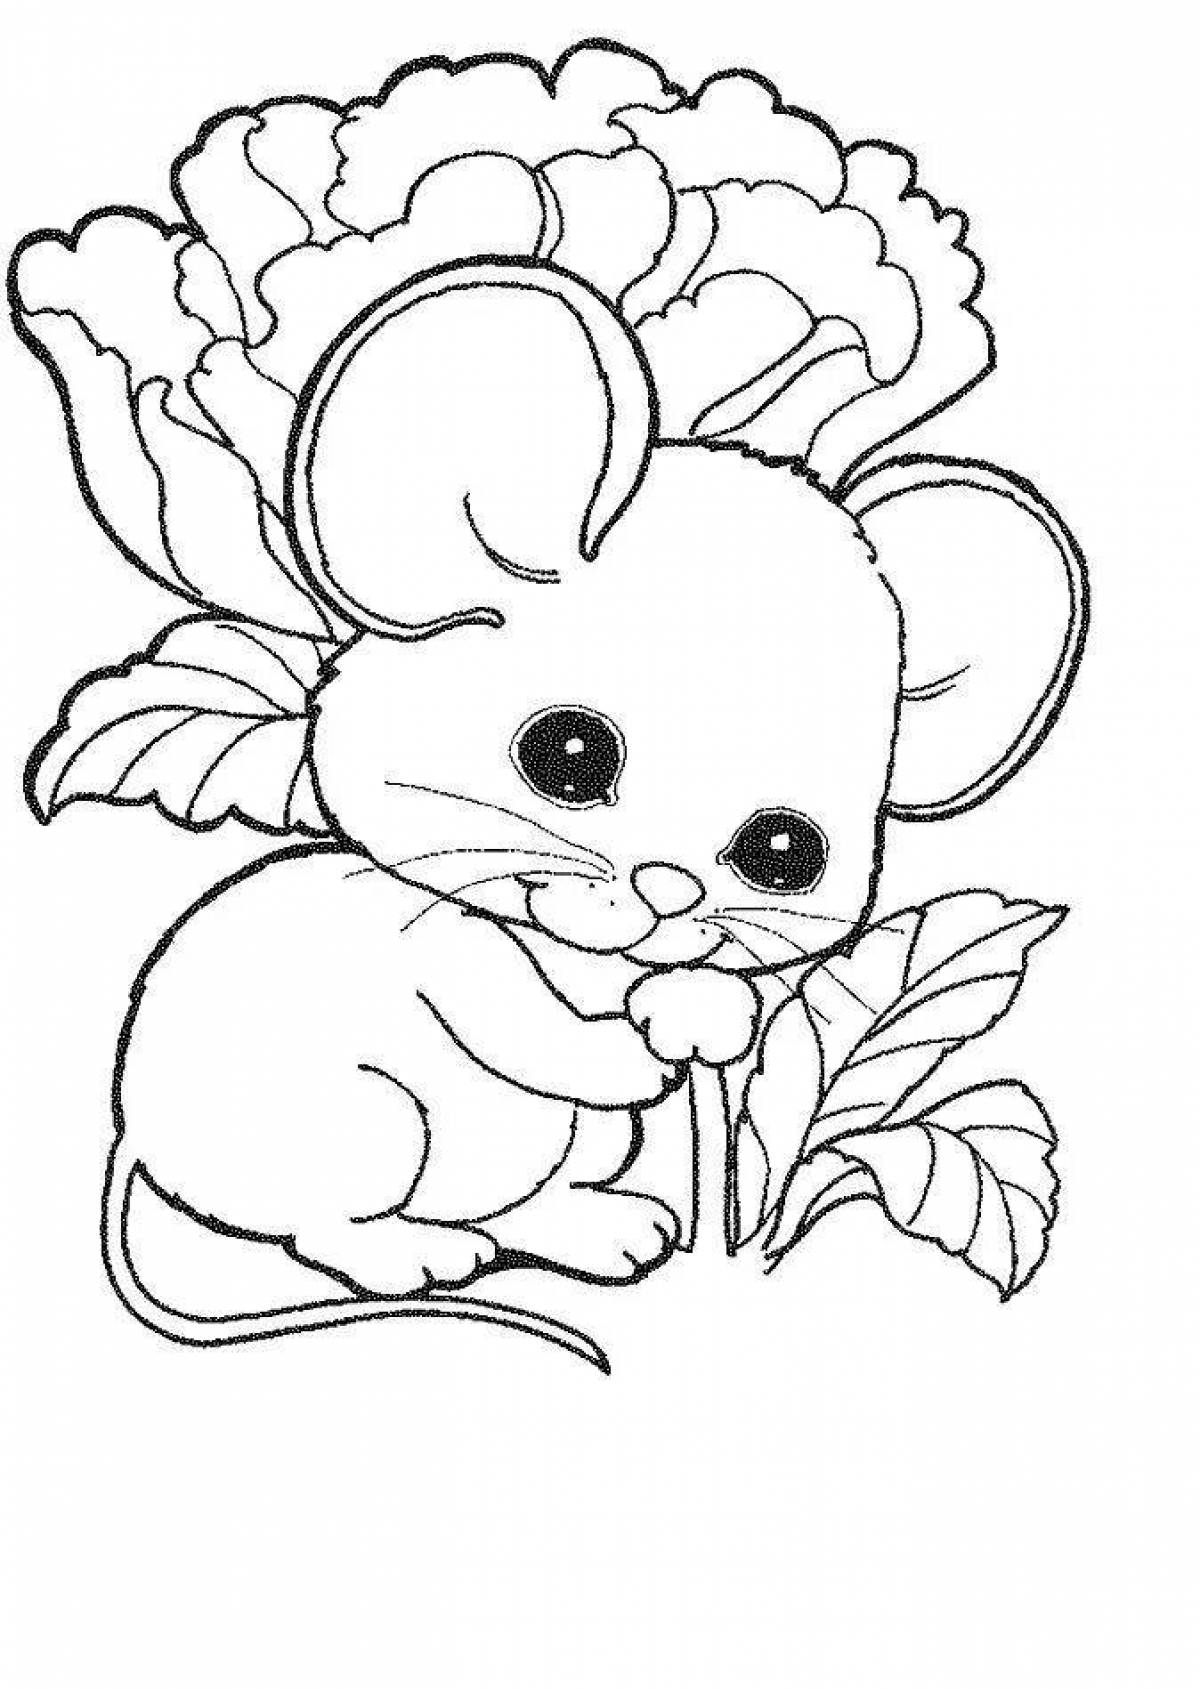 Раскраска мышь распечатать. Раскраска мышка. Мышка раскраска для детей. Раскраски для девочек животные. Живые раскраски.